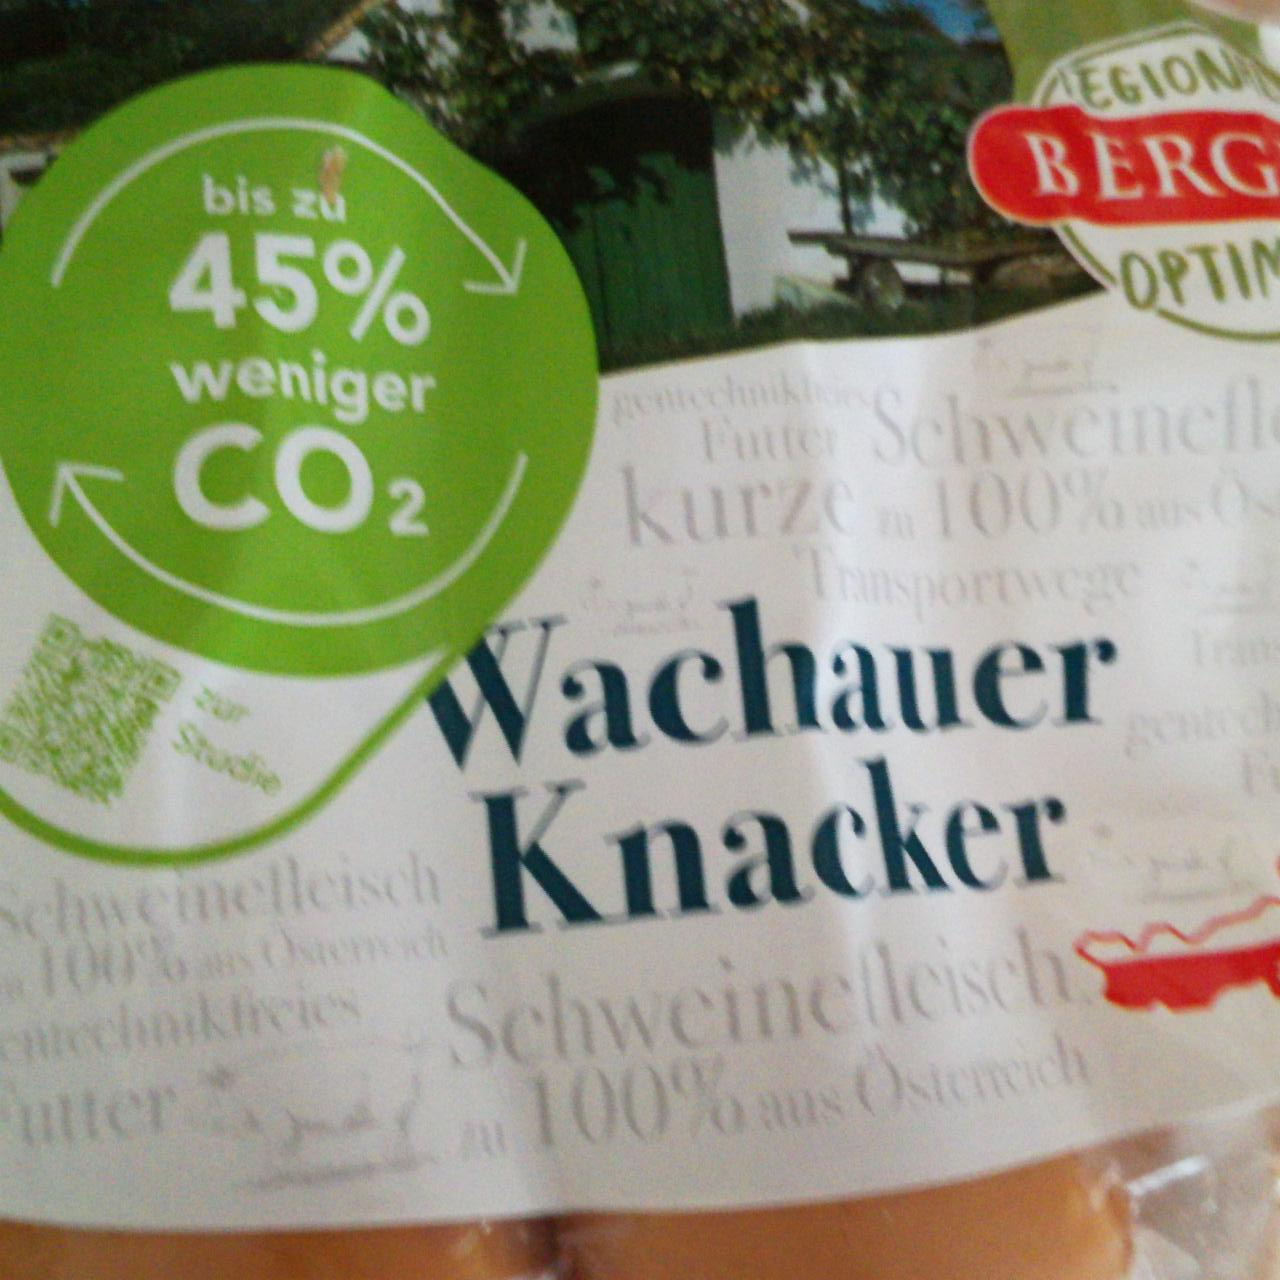 Fotografie - Wachauer Knacker Mein Berger Schinken